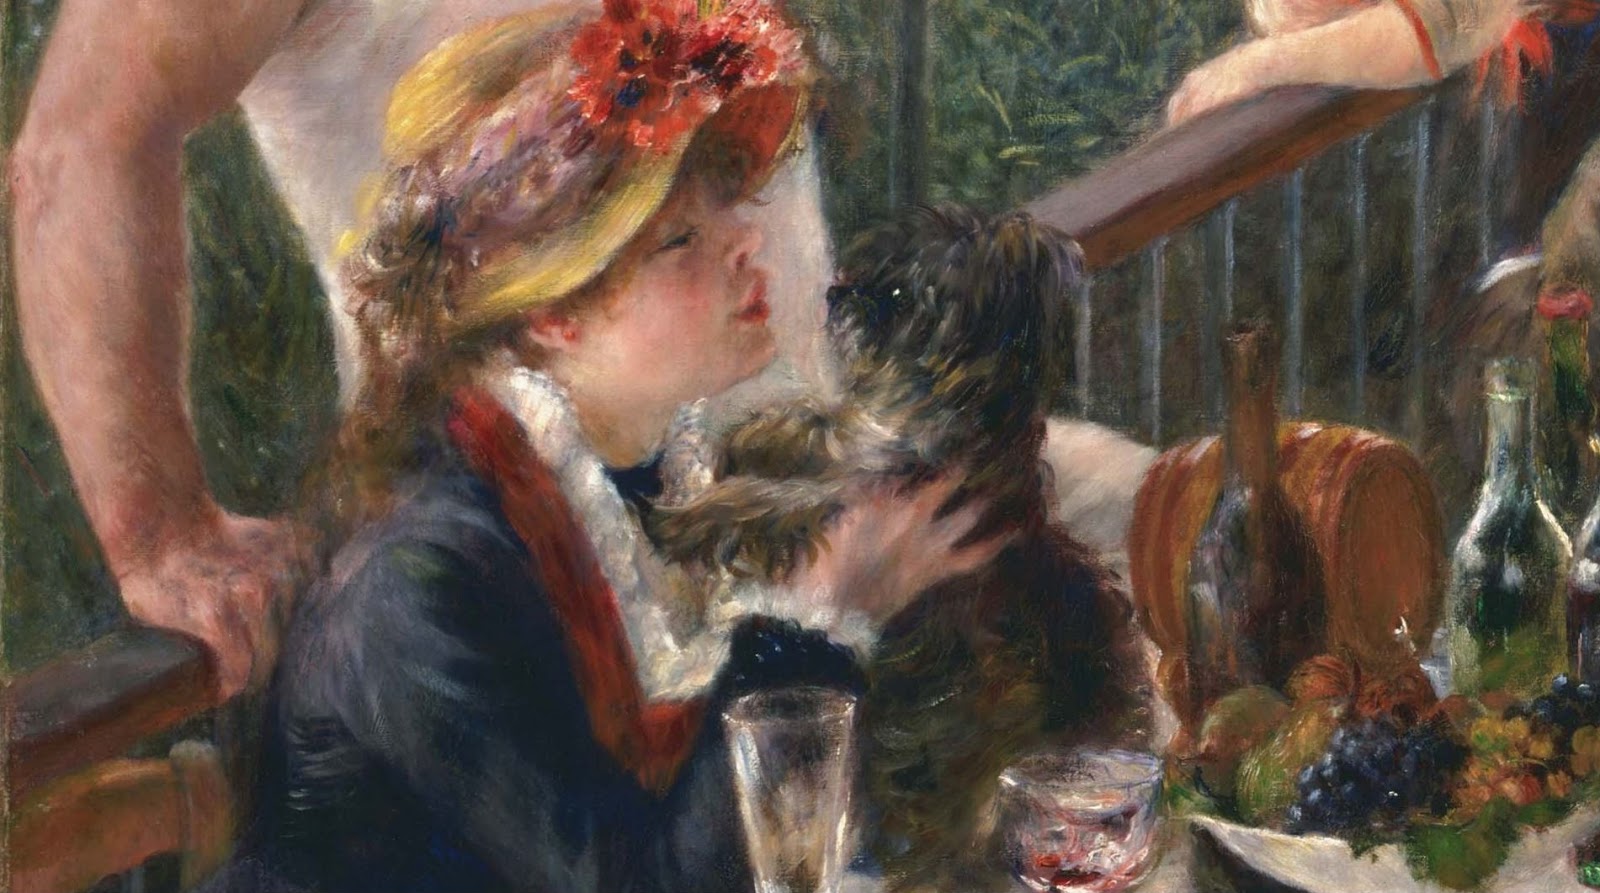 Pierre+Auguste+Renoir-1841-1-19 (562).JPG